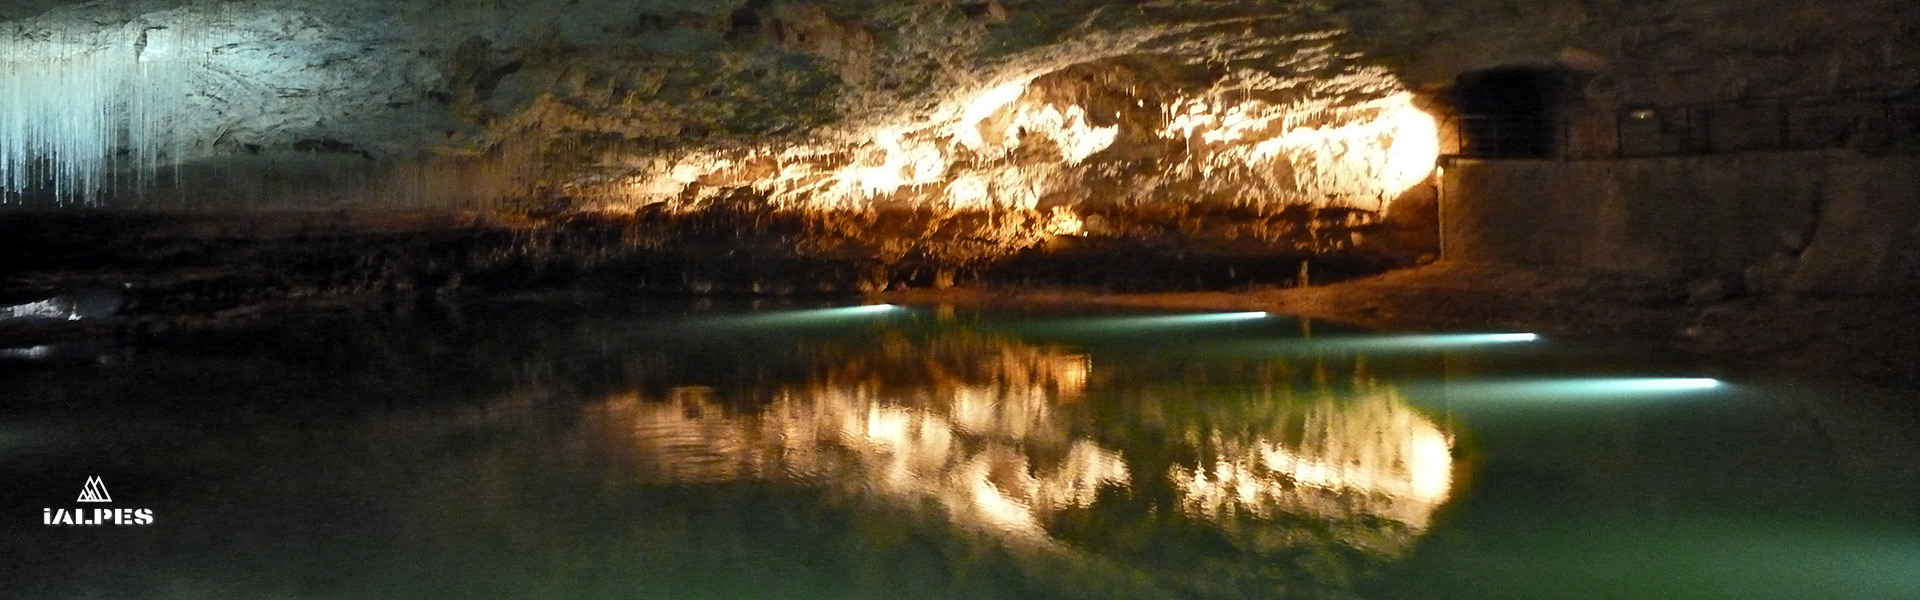 Grotte de Choranche, Isère, Rhône-Alpes